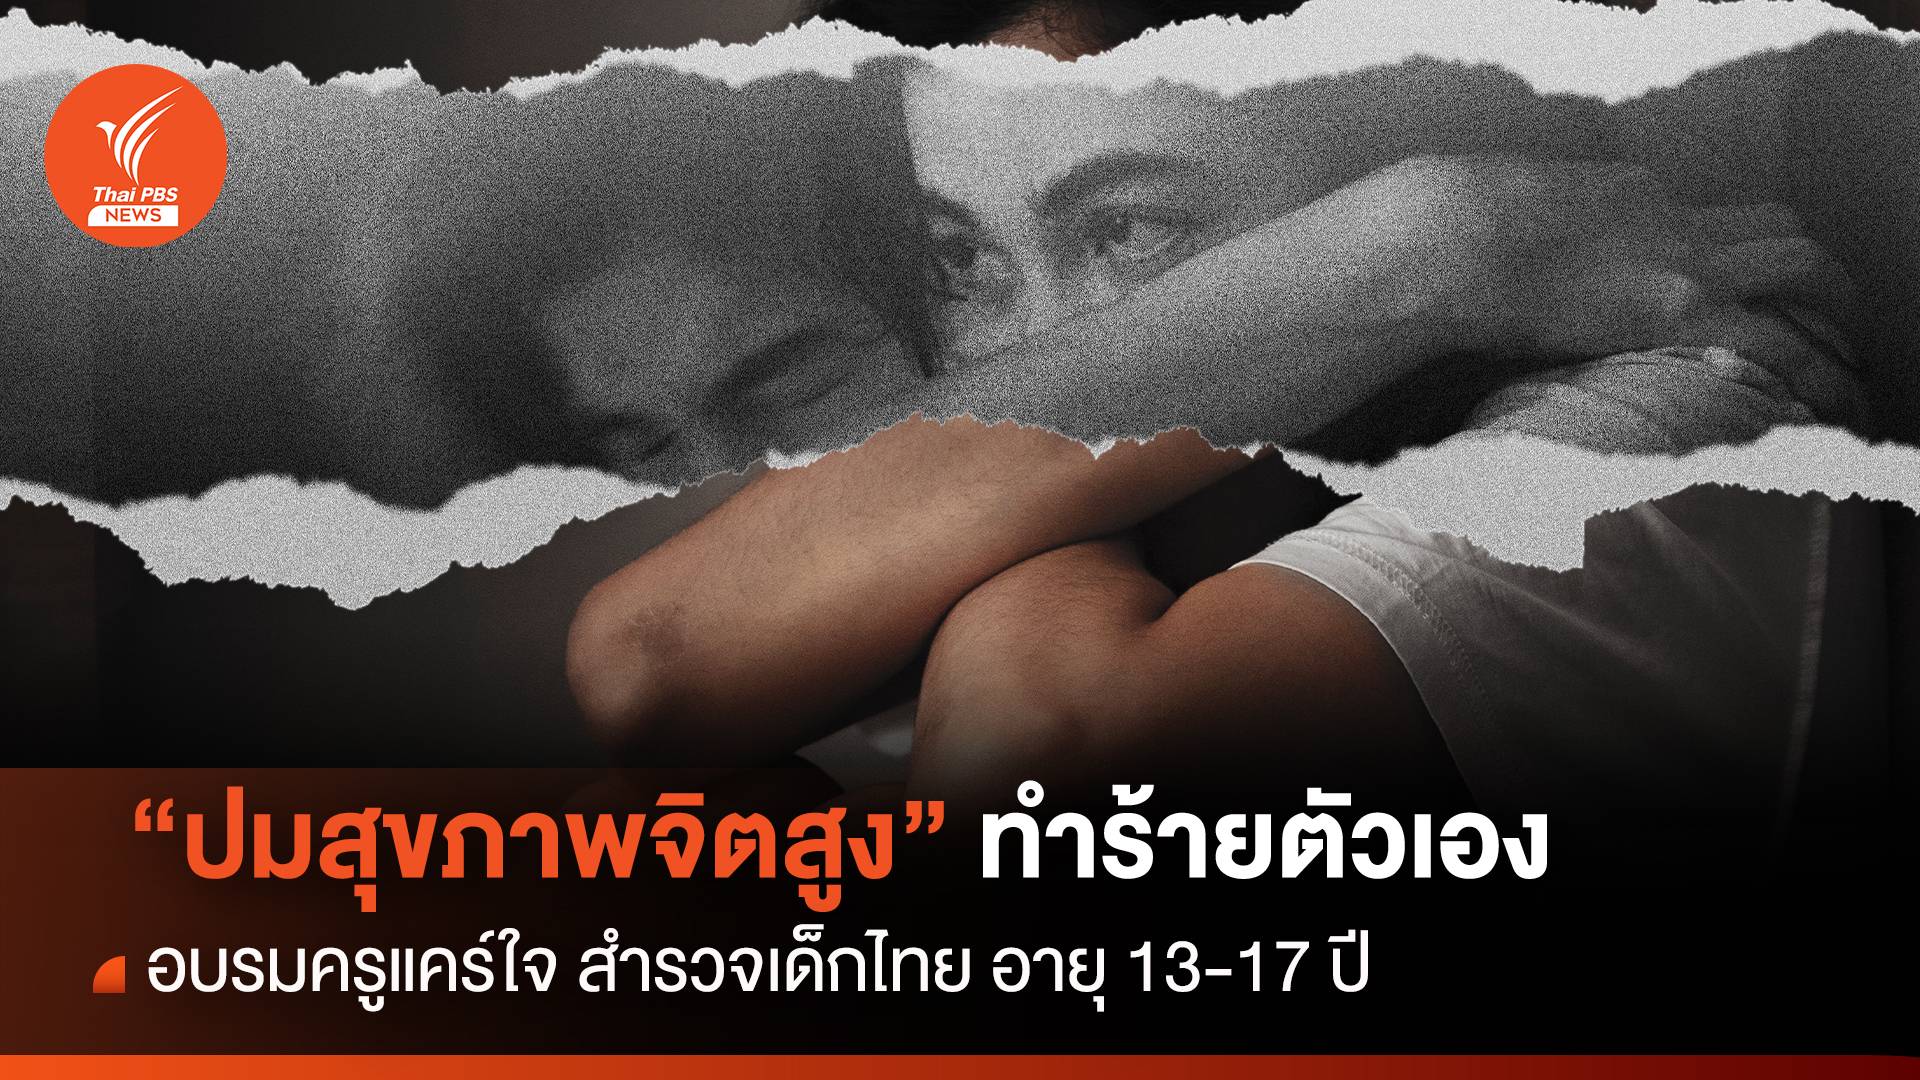 วัยรุ่นไทย 13-17 ปี "ปัญหาสุขภาพจิตสูง" เคยคิดทำร้ายตัวเอง